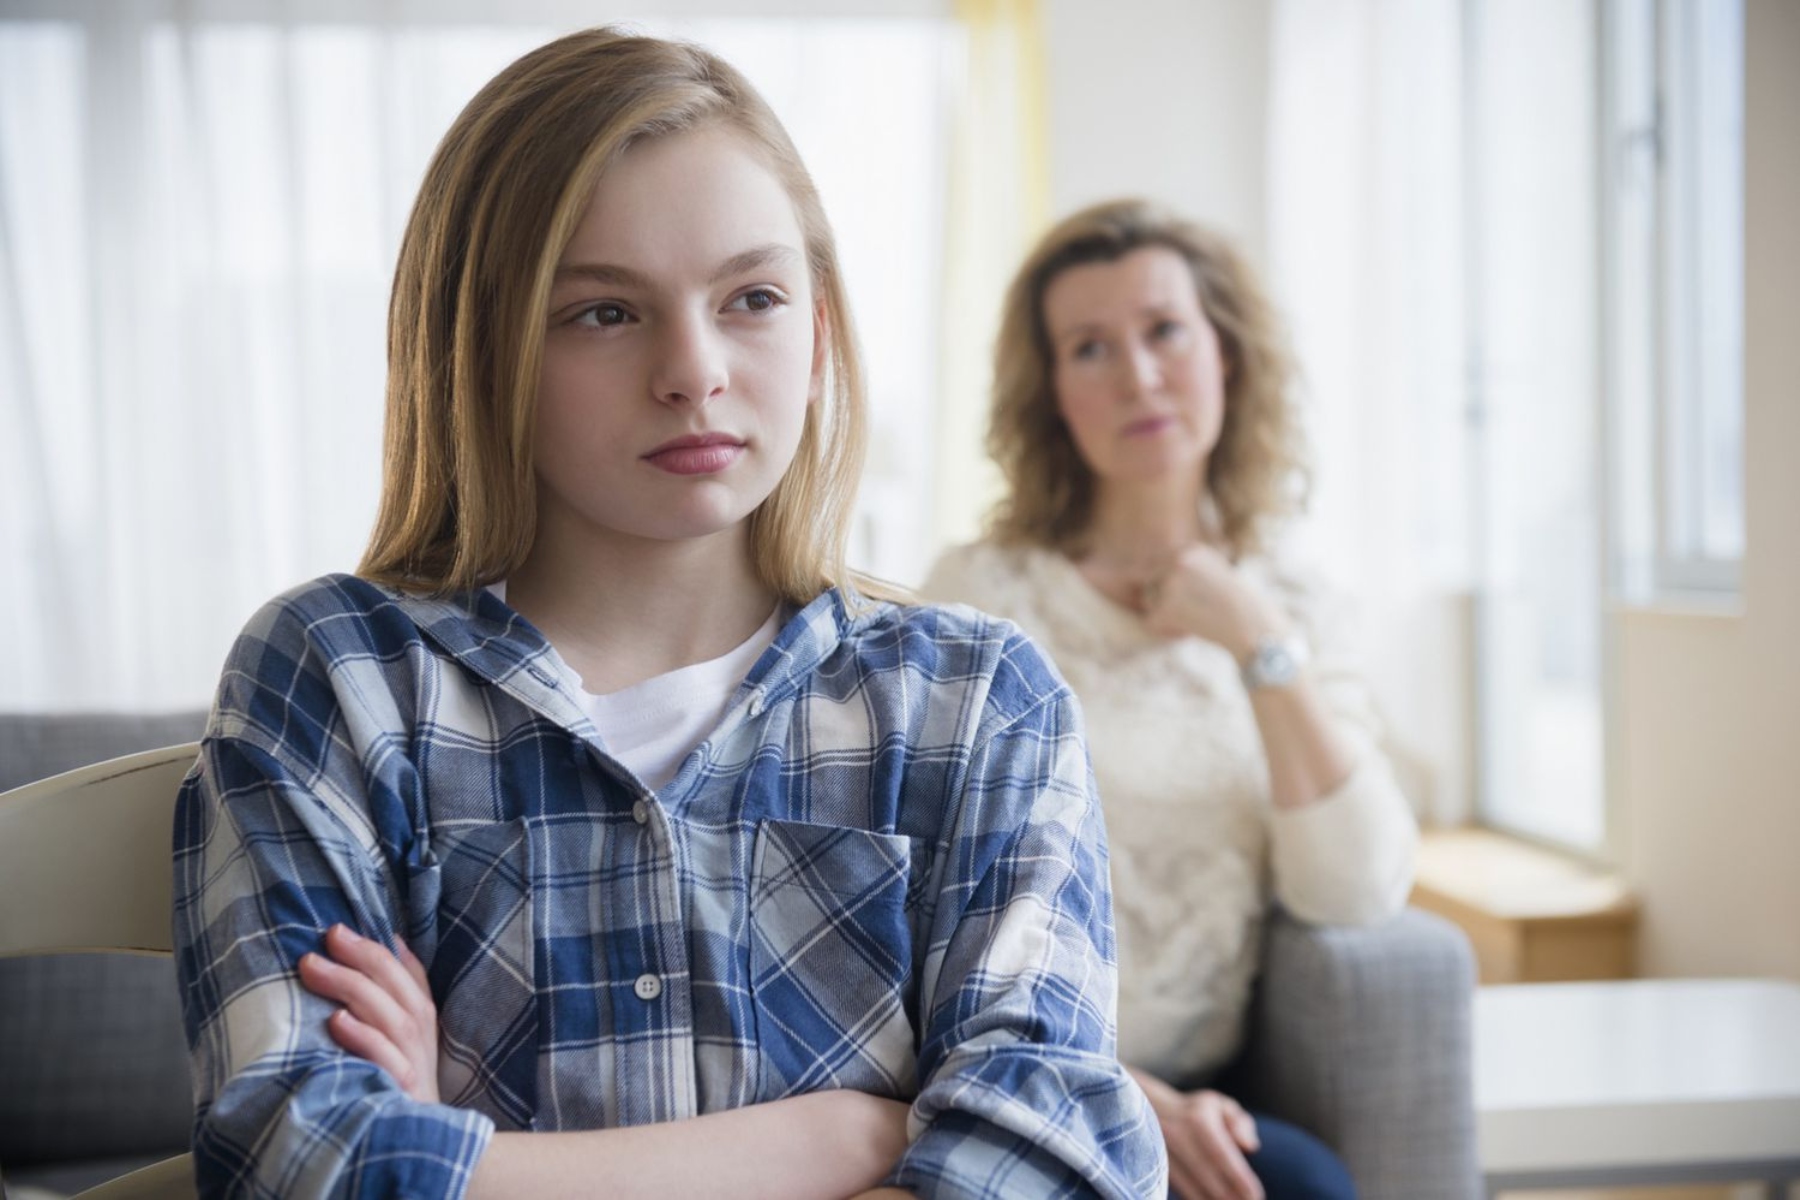 Έφηβοι: Οι προβληματικές σχέσεις έχουν μόνιμες συνέπειες για την υγεία